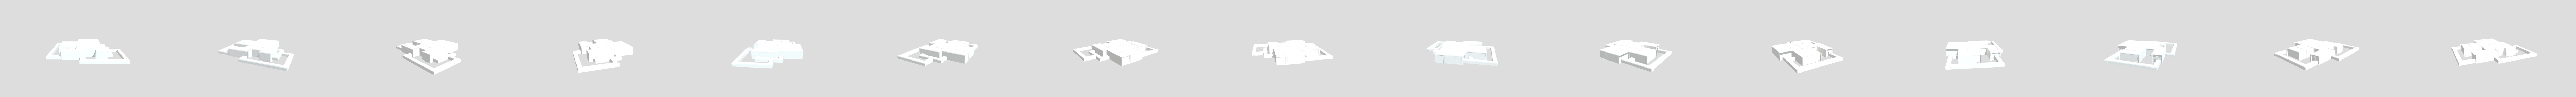 Fnaf 3 Map - Download Free 3D model by Tgames (@brandonmartinleon